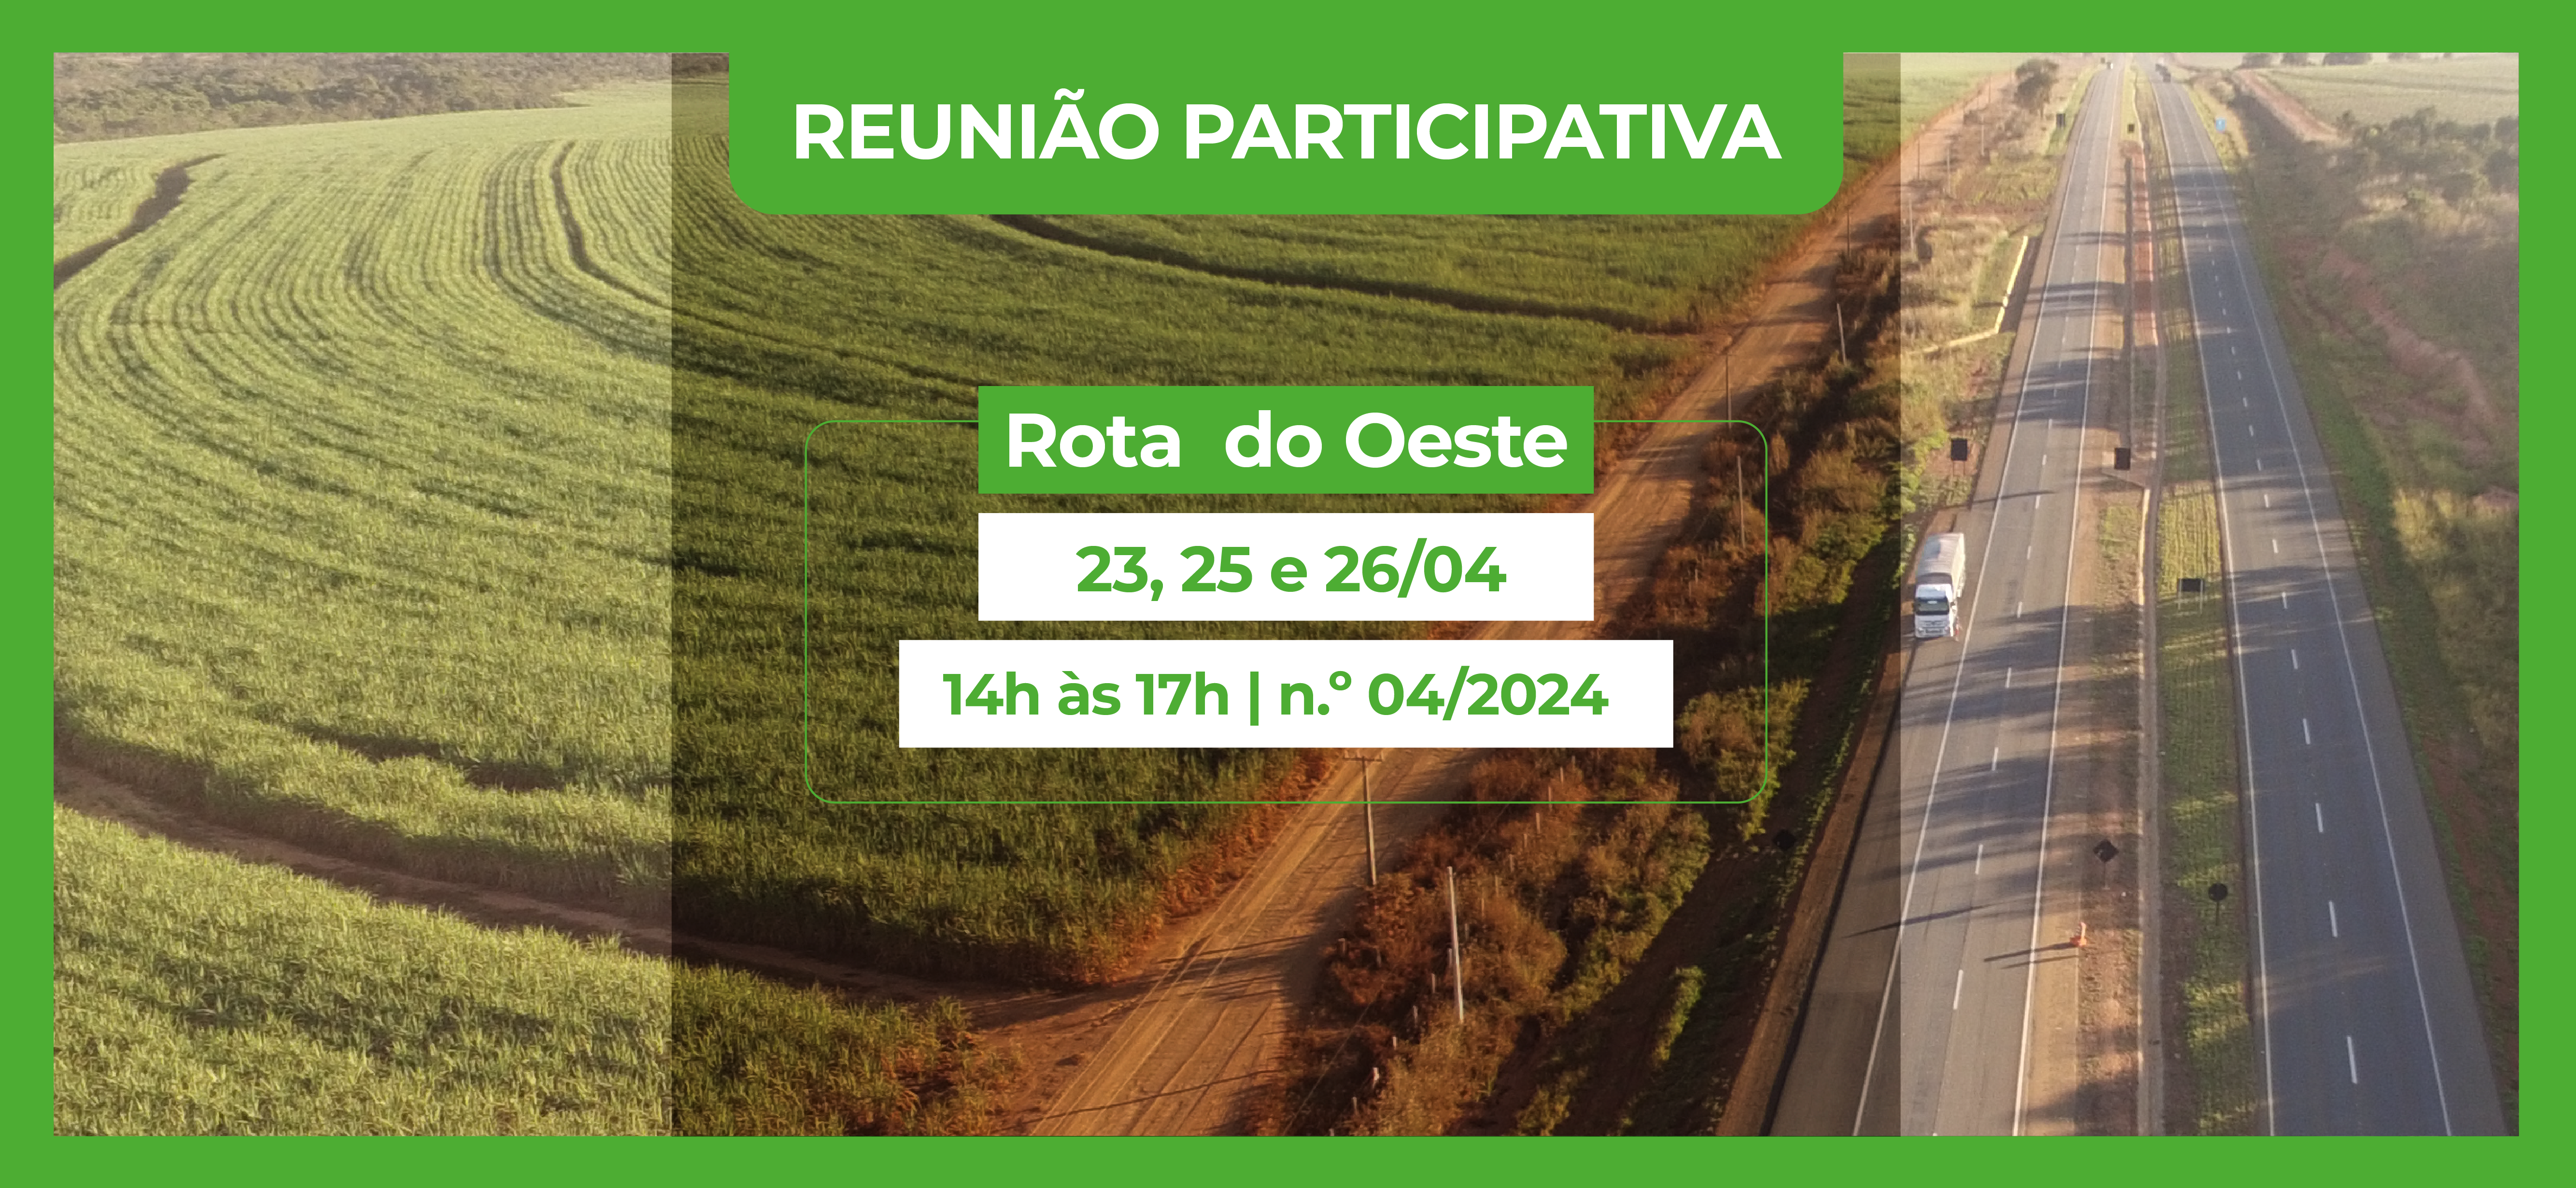 Concessionária administra BR-163 entre Mato Grosso e Mato Grosso do Sul